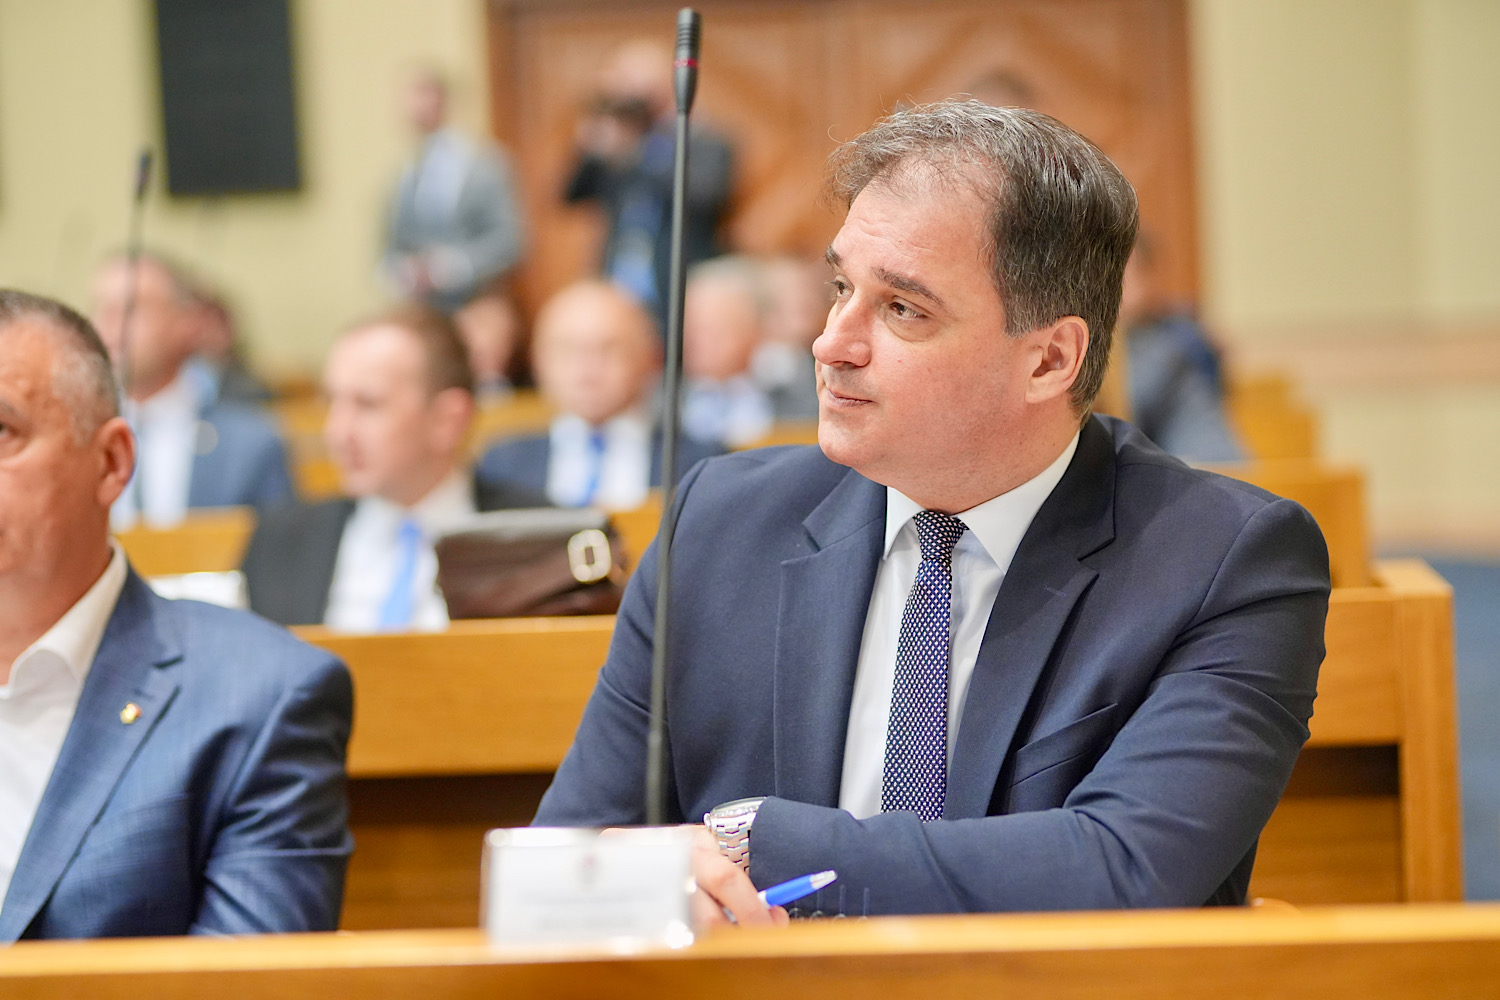 Govedarica: Mora se dati odgovor gdje Republika Srpska treba da se pozicionira